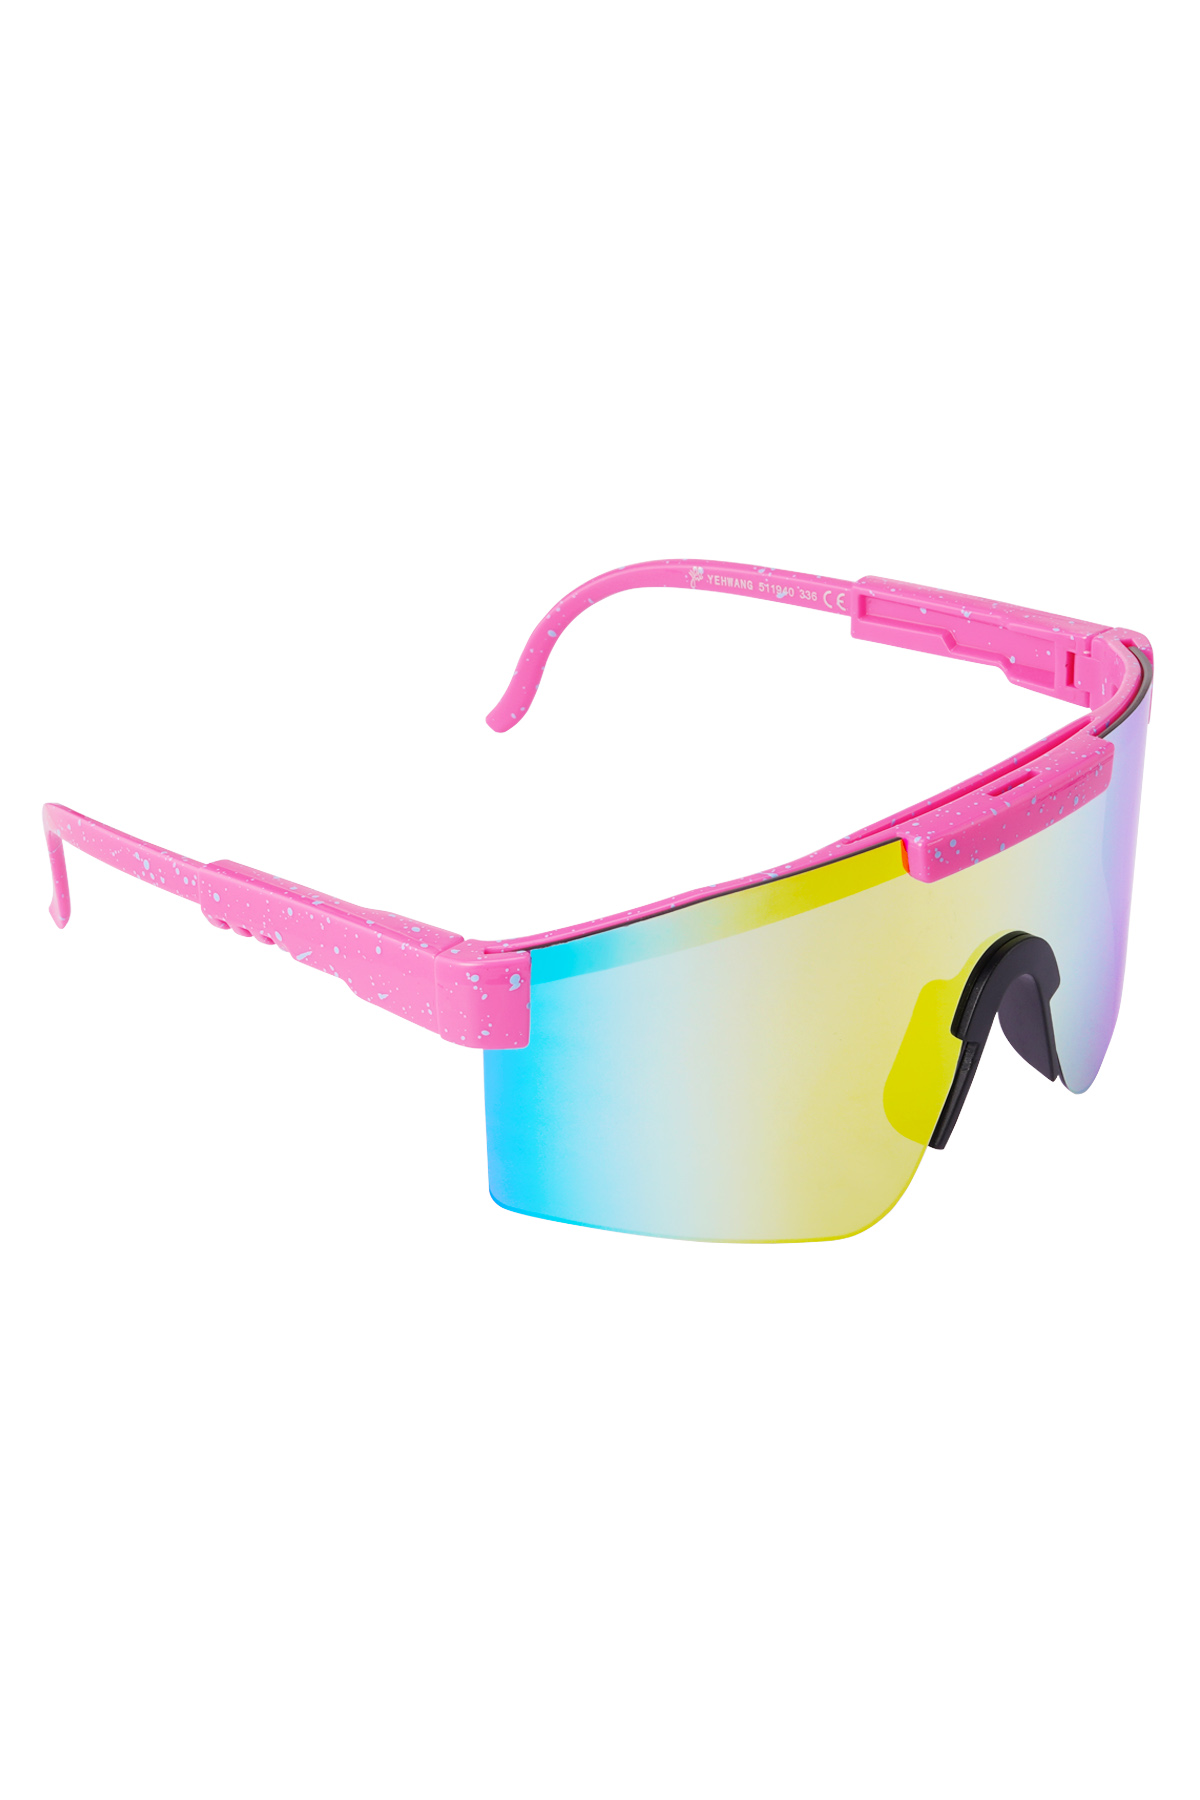 Occhiali da sole con lenti colorate stampate - rosa h5 